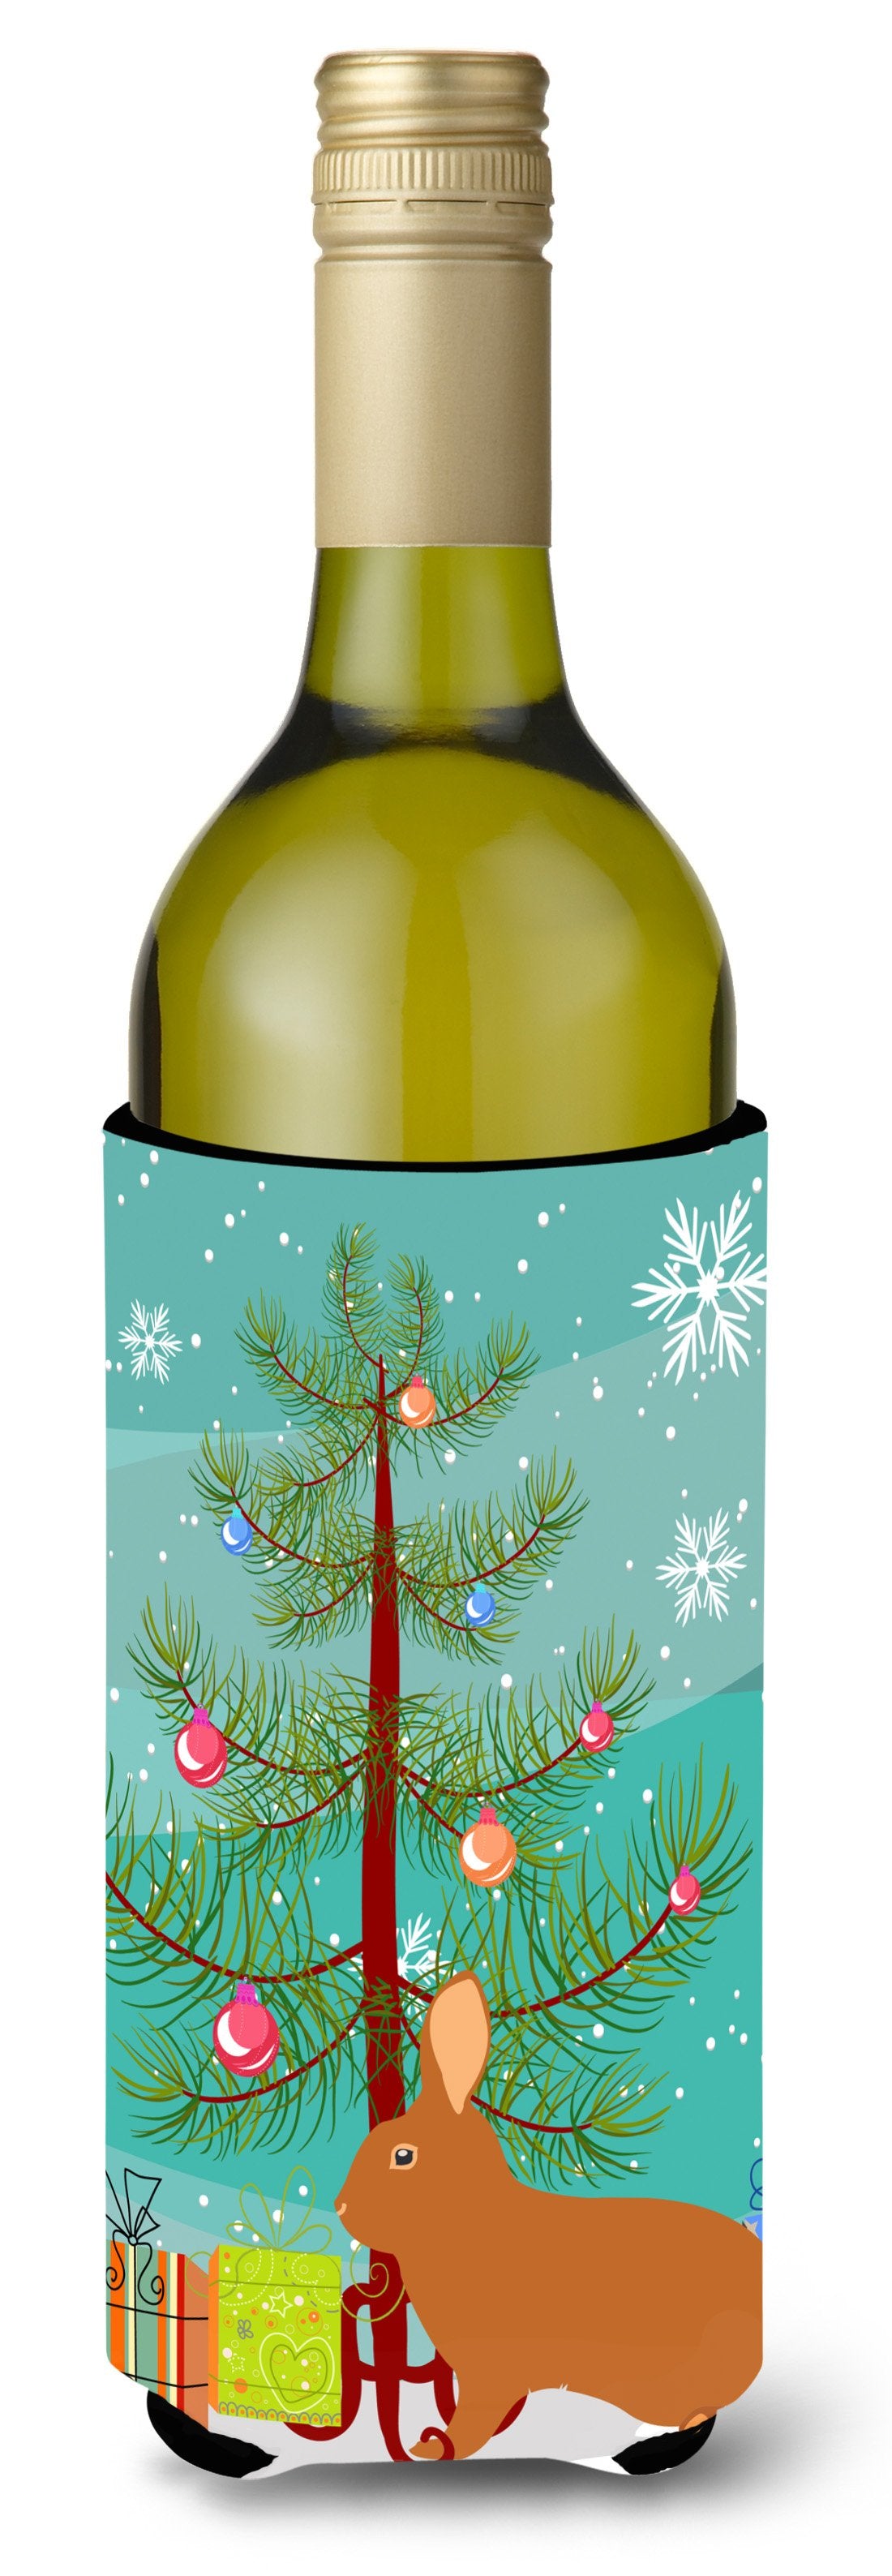 Rex Rabbit Christmas Wine Bottle Beverge Insulator Hugger BB9336LITERK by Caroline's Treasures